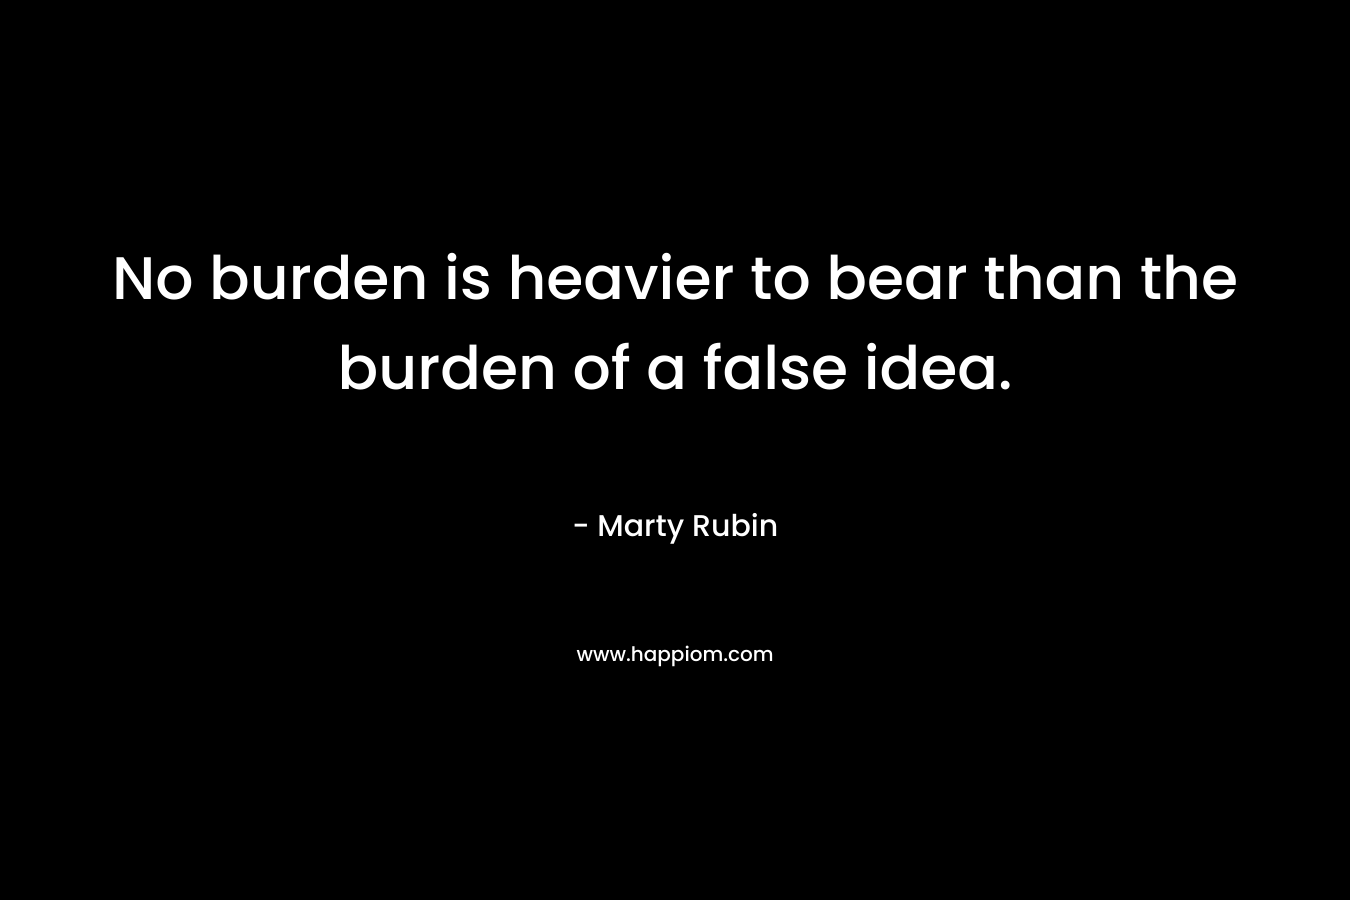 No burden is heavier to bear than the burden of a false idea.